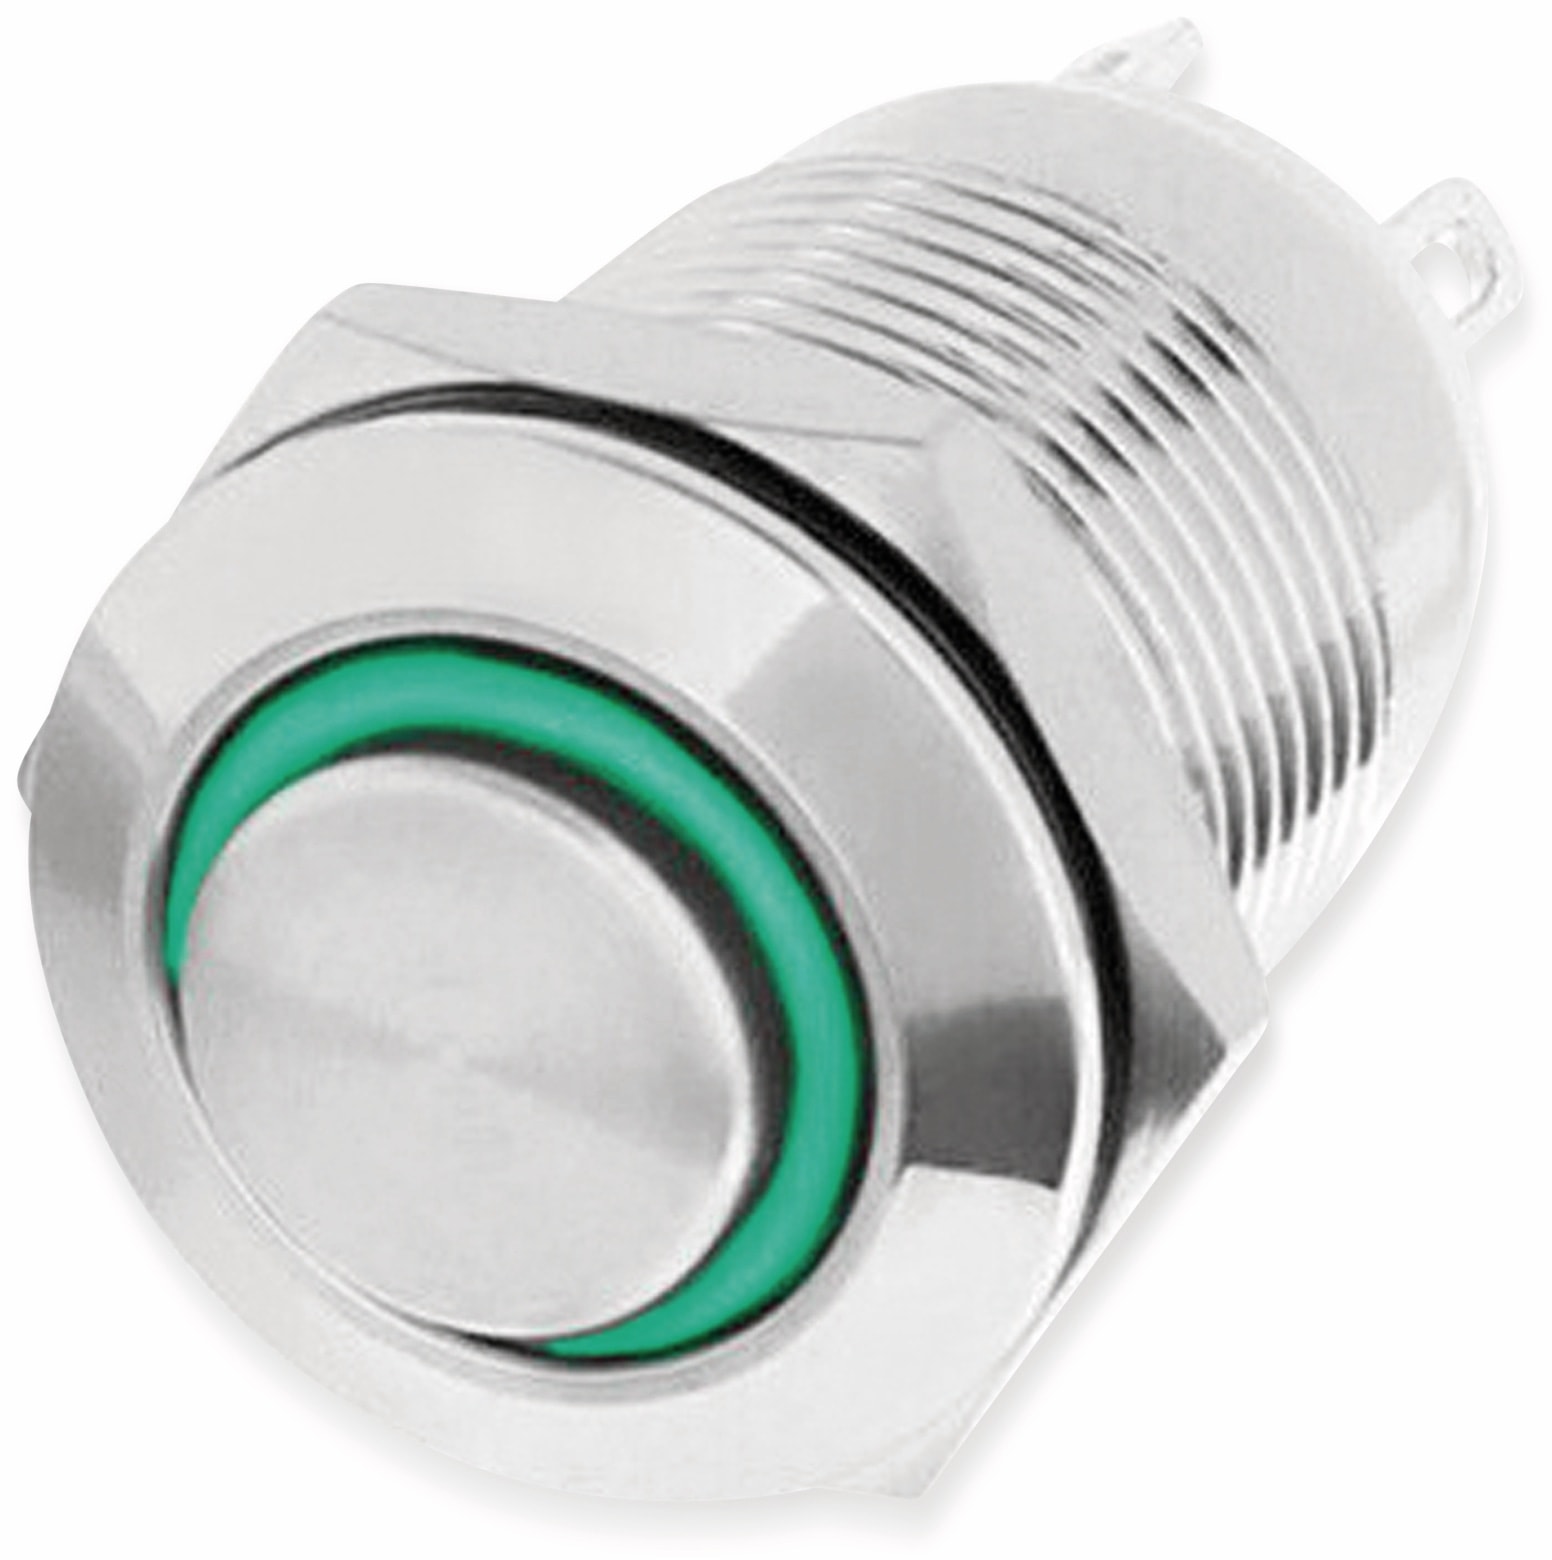 LED-Druckschalter, Ringbeleuchtung grün 12 V, Ø12 mm, 2 A/48 V